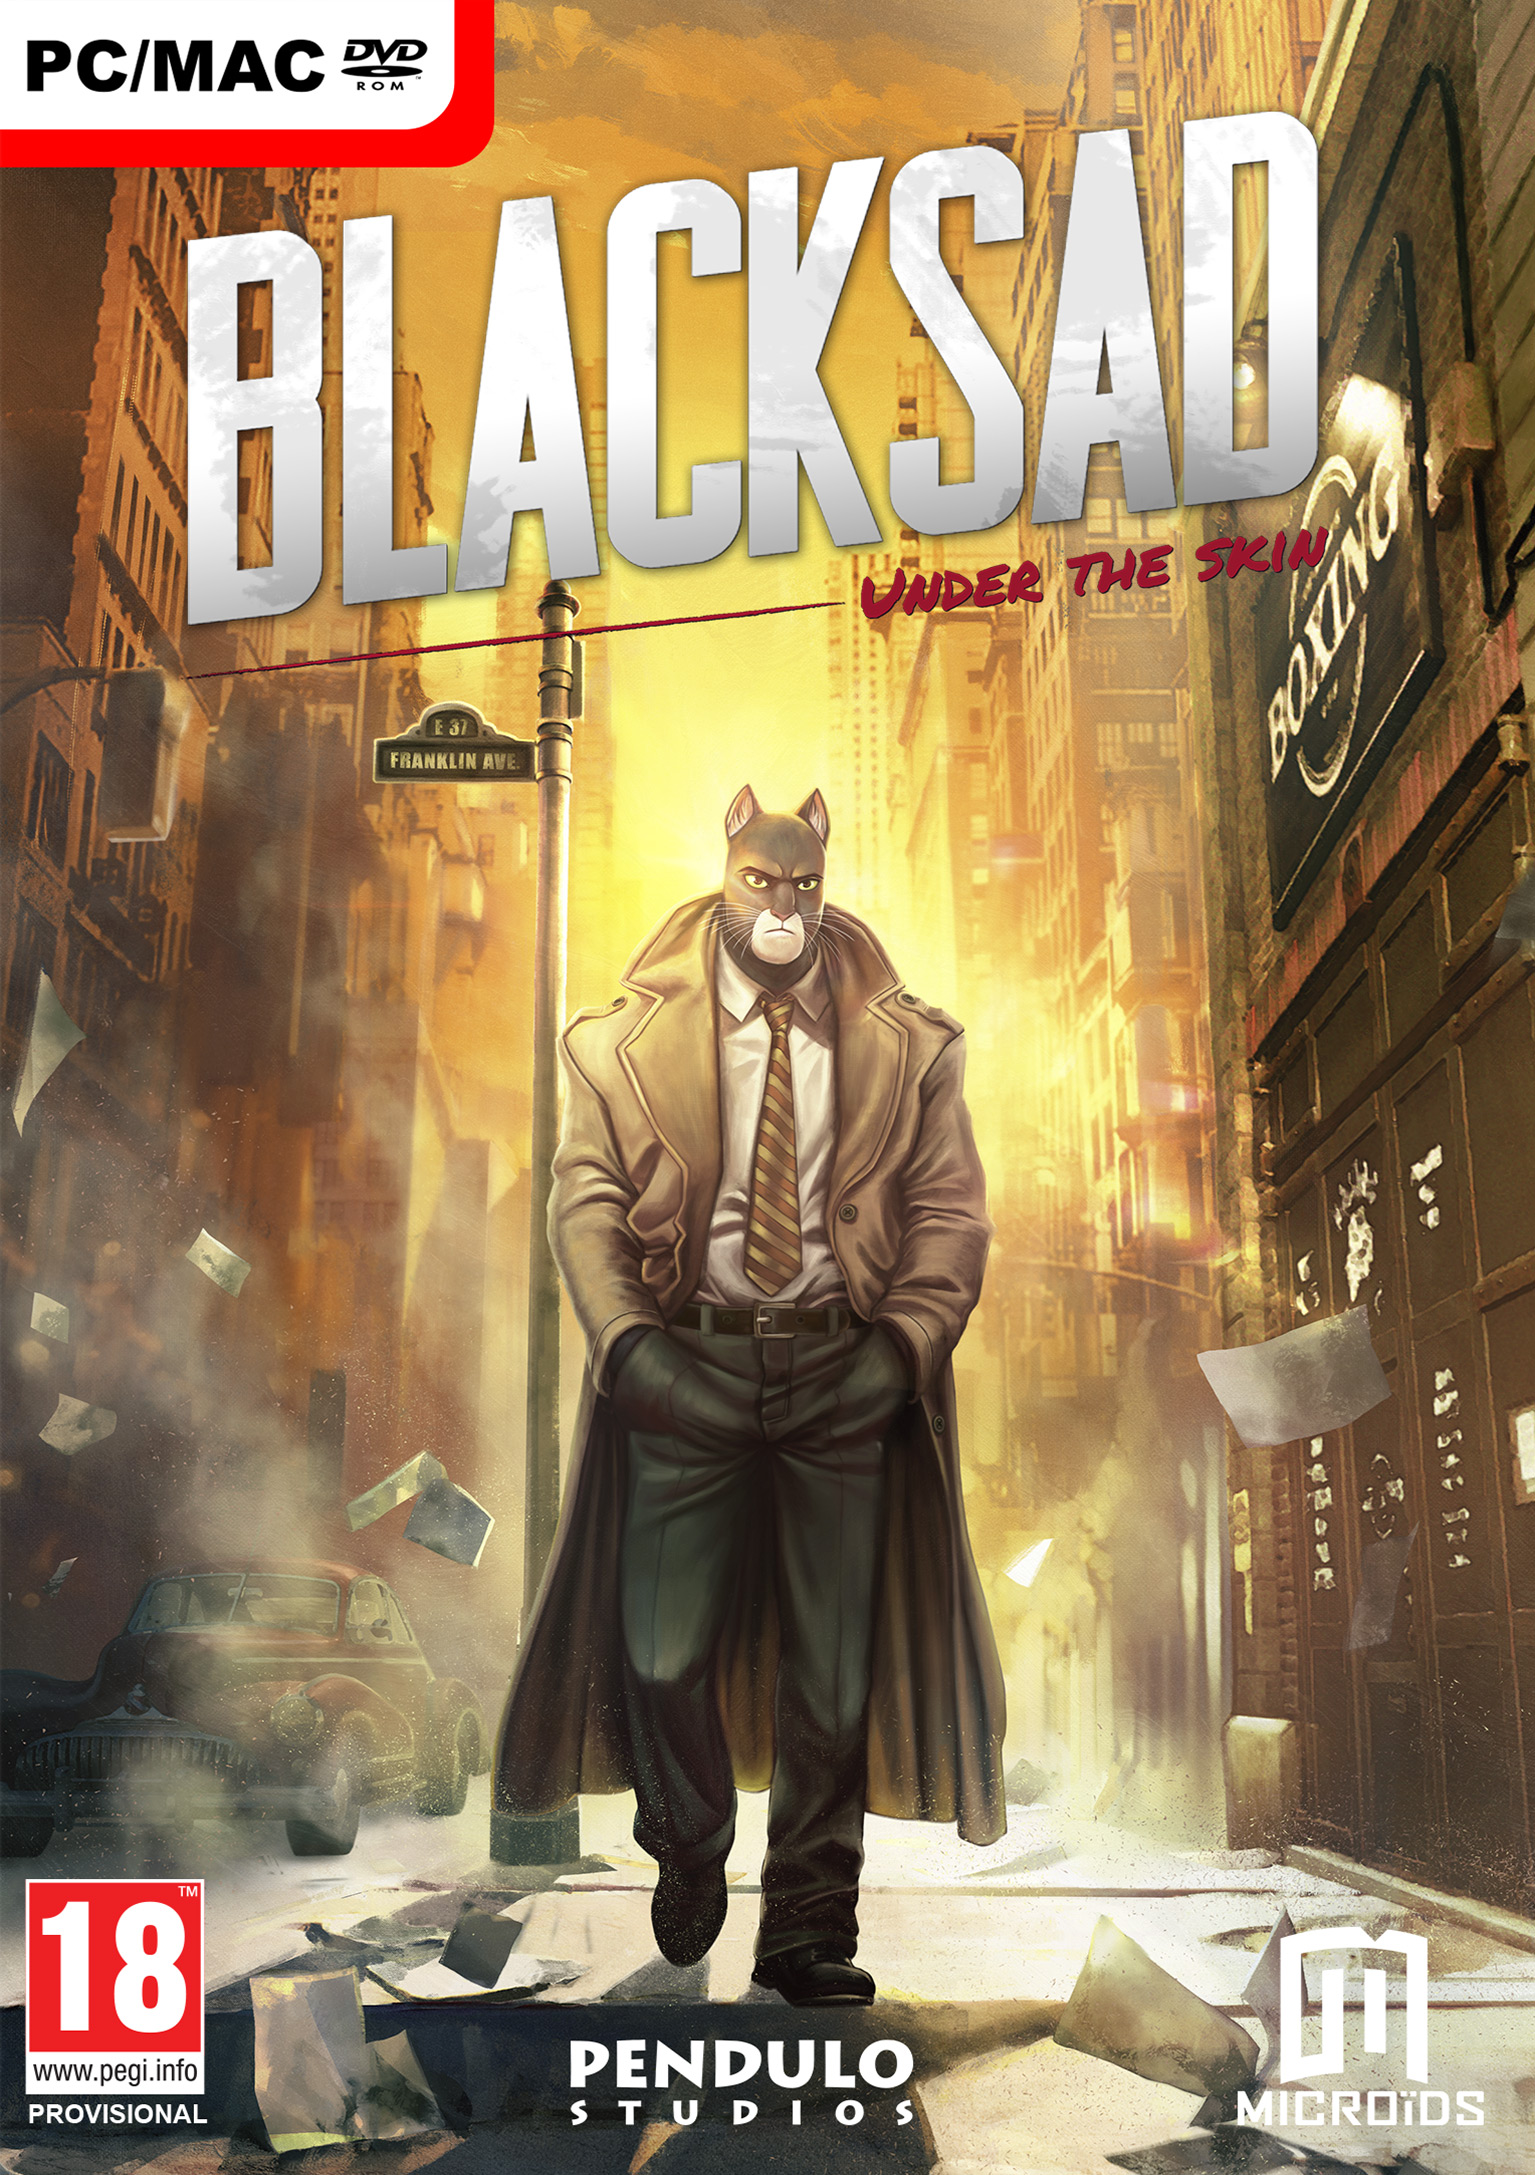 Blacksad: Under the Skin - pedn DVD obal